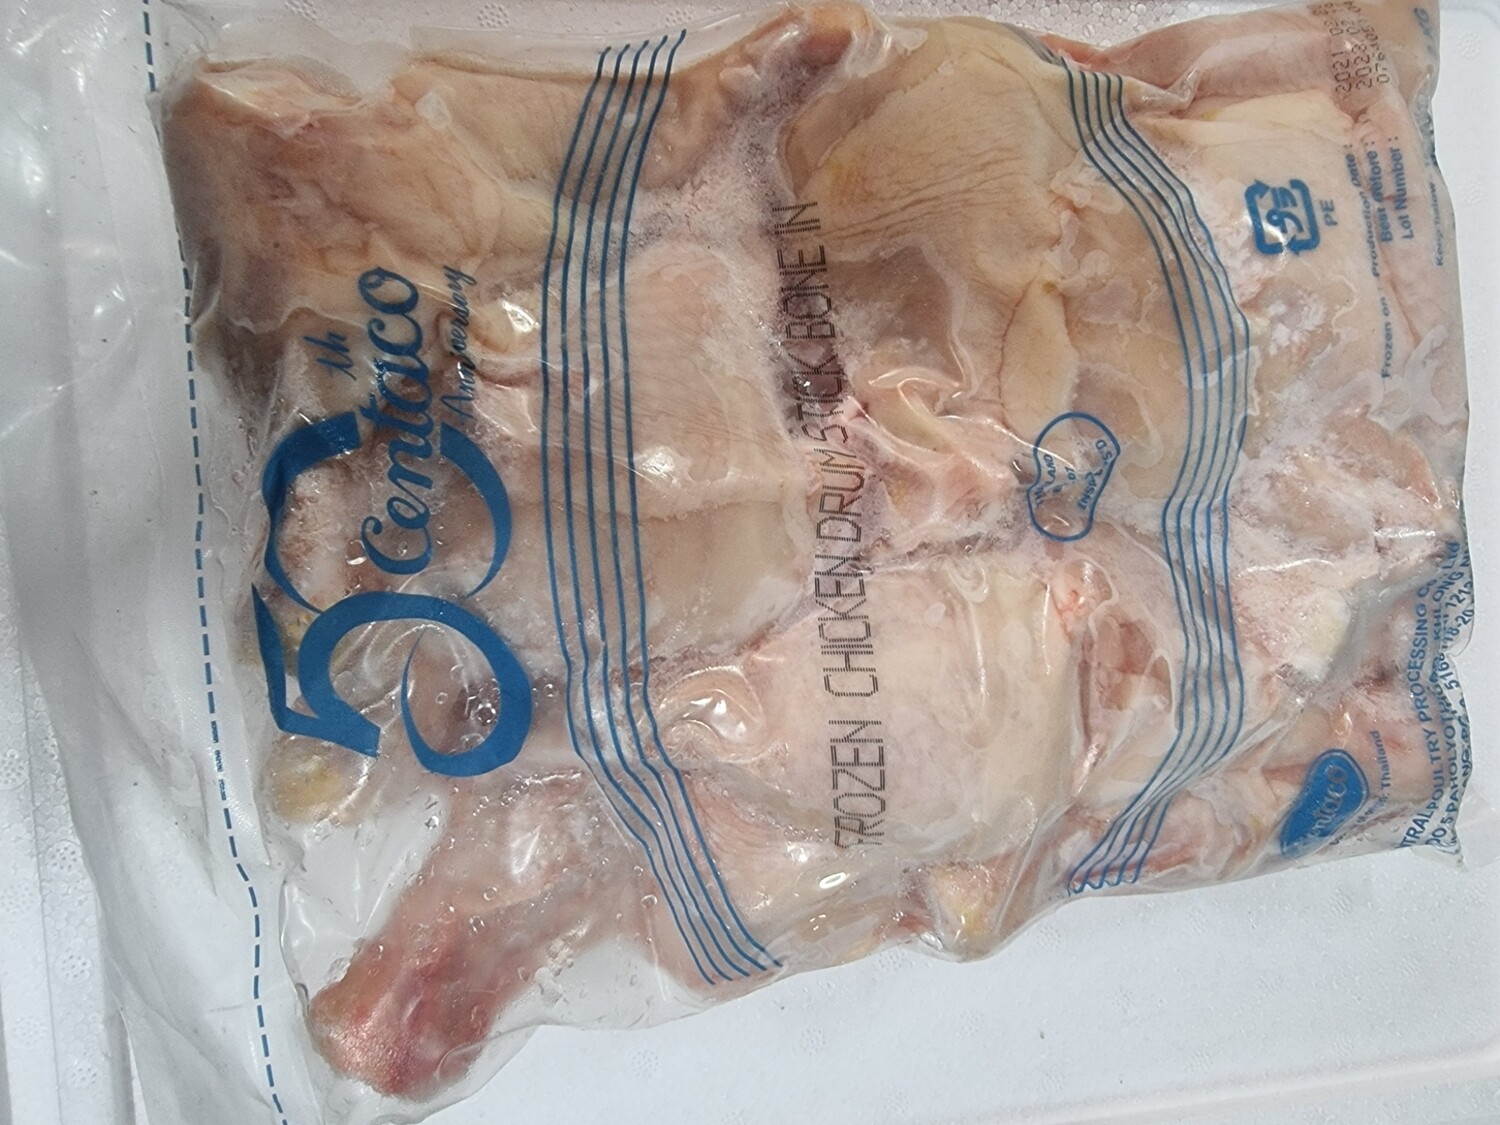 Paha ayam ada tulang 2kg halal